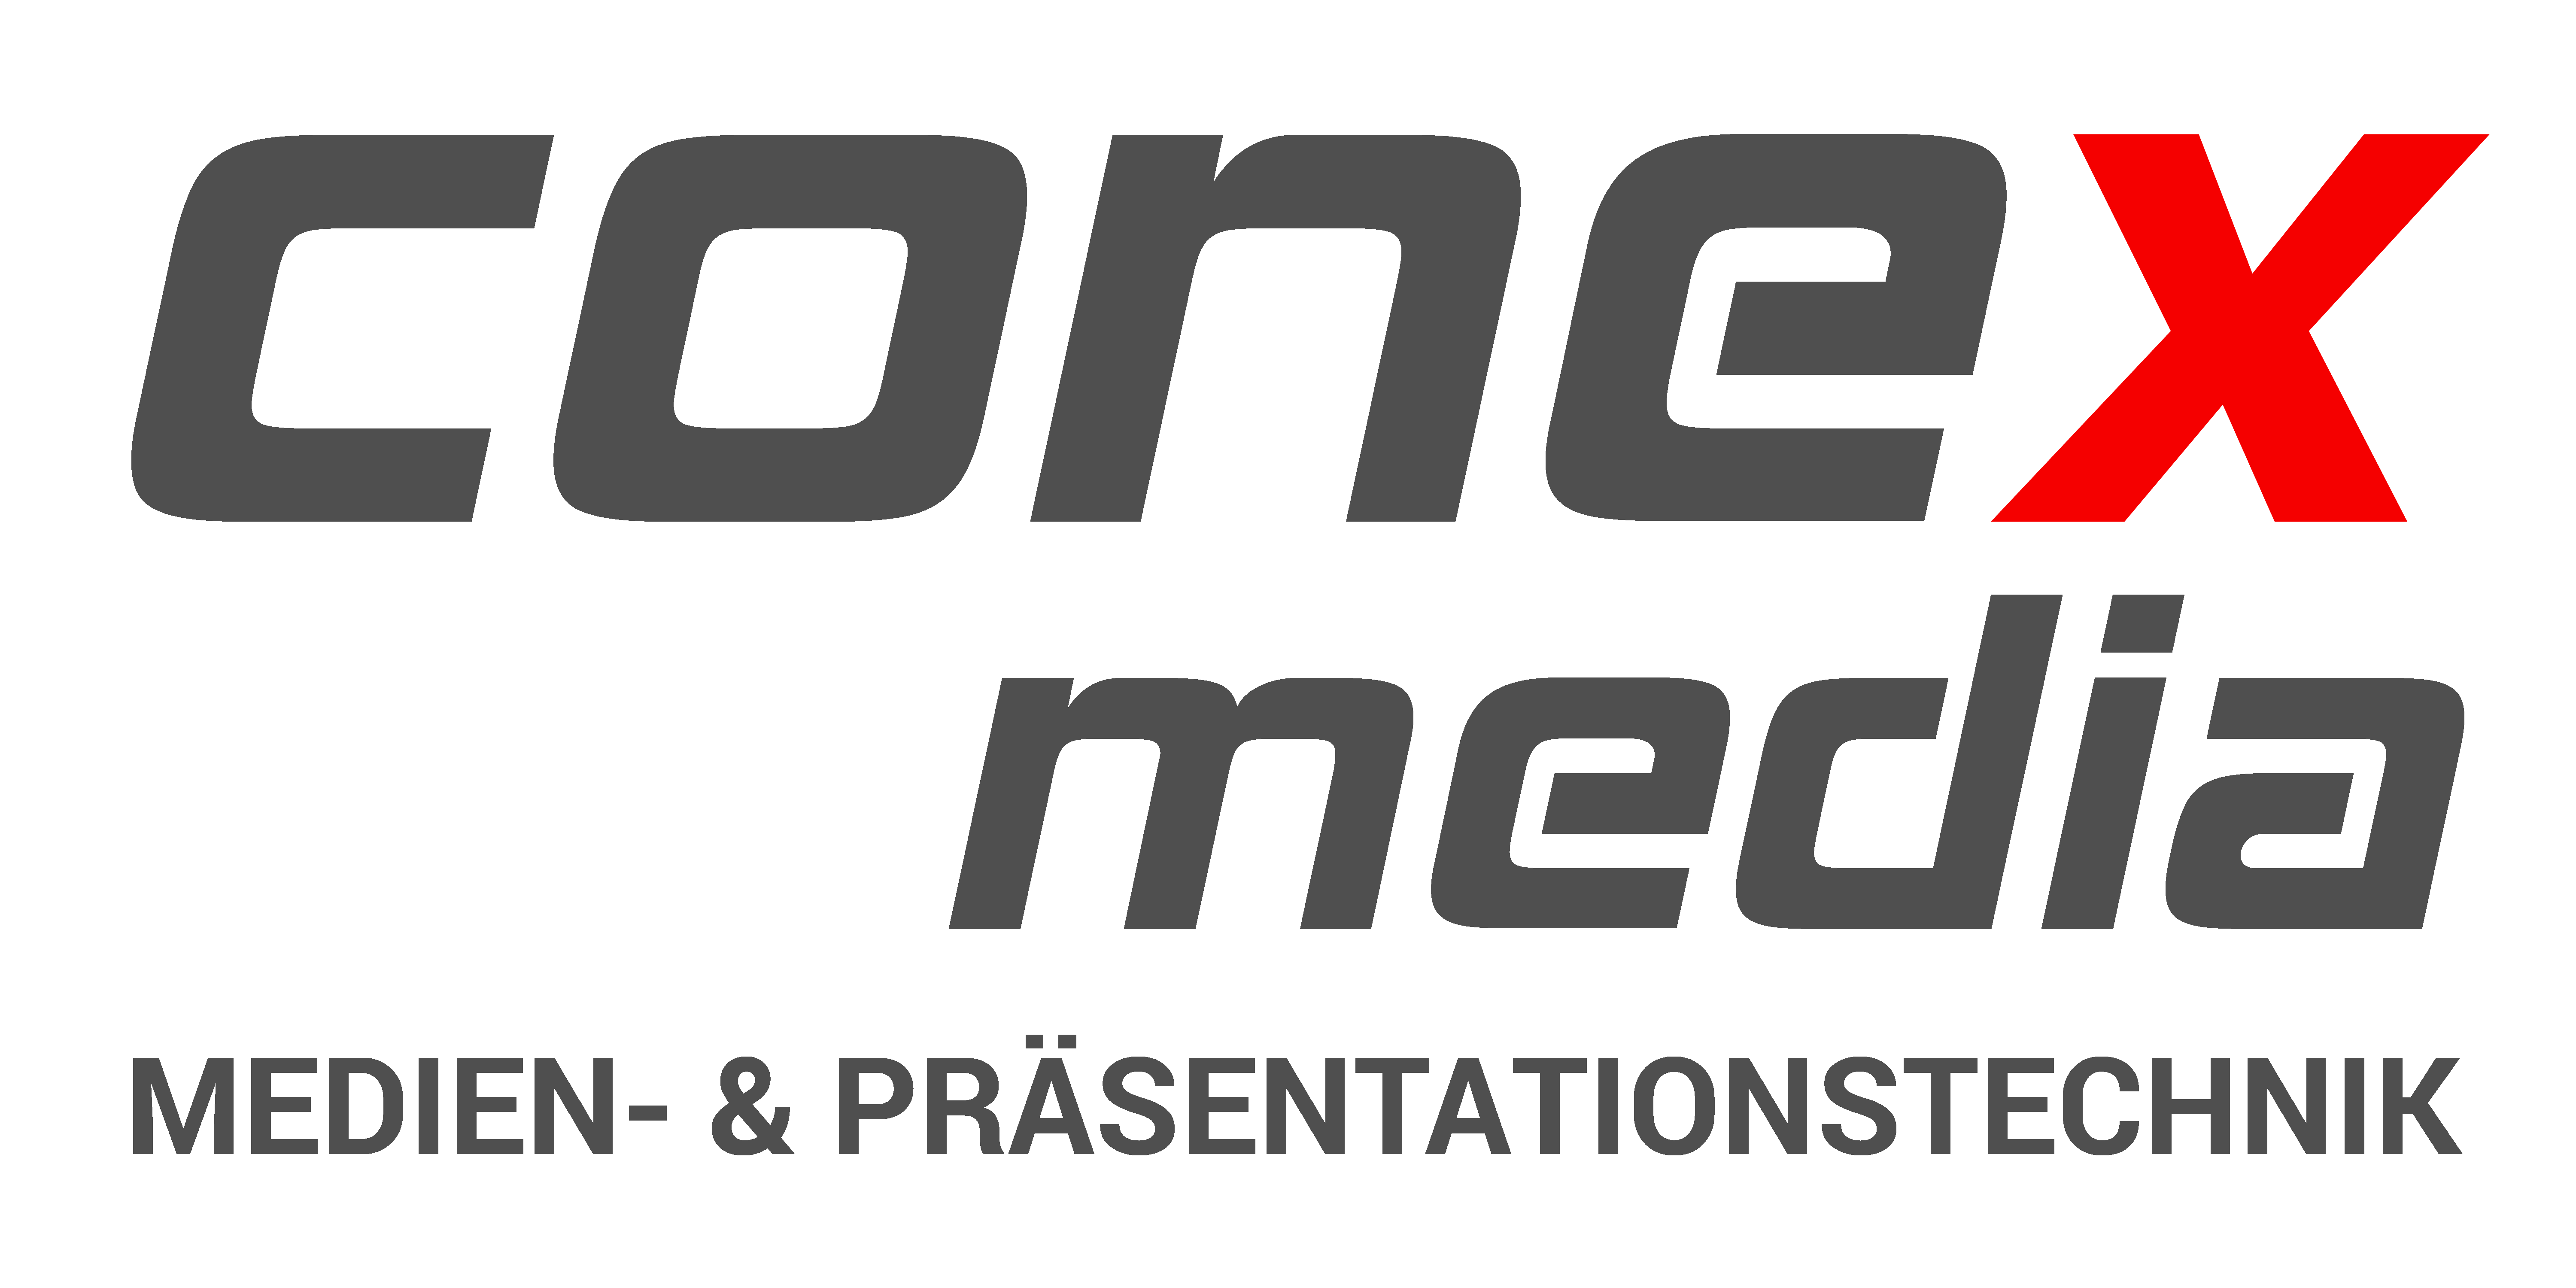 conex_media_logo_Medien_Original_Transparent_6000x3000.png